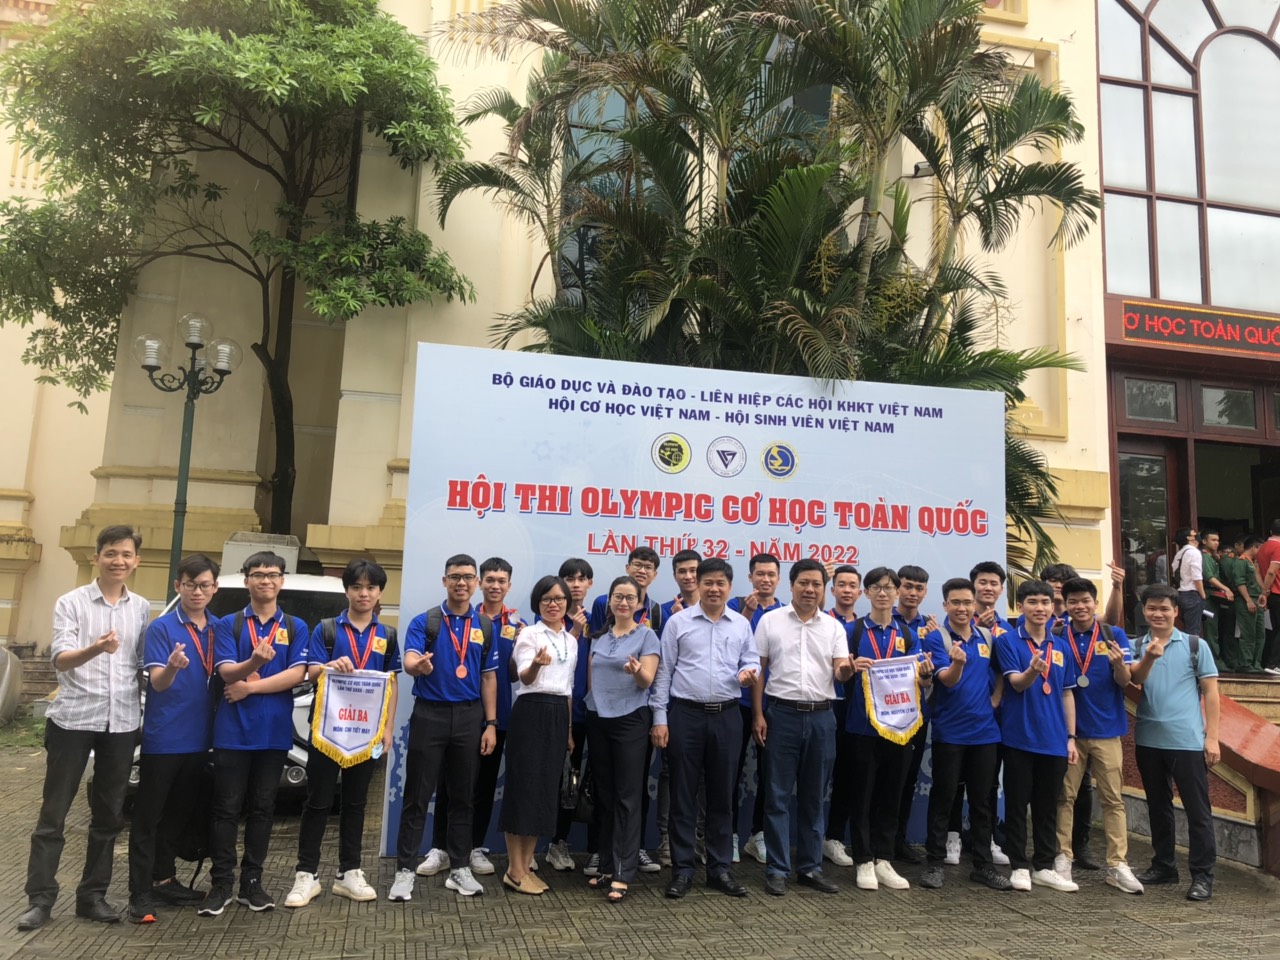 Đại học Công nghiệp Hà Nội đạt 18 giải cá nhân và 2 giải đồng đội tại Olympic Cơ học toàn quốc lần thứ 32